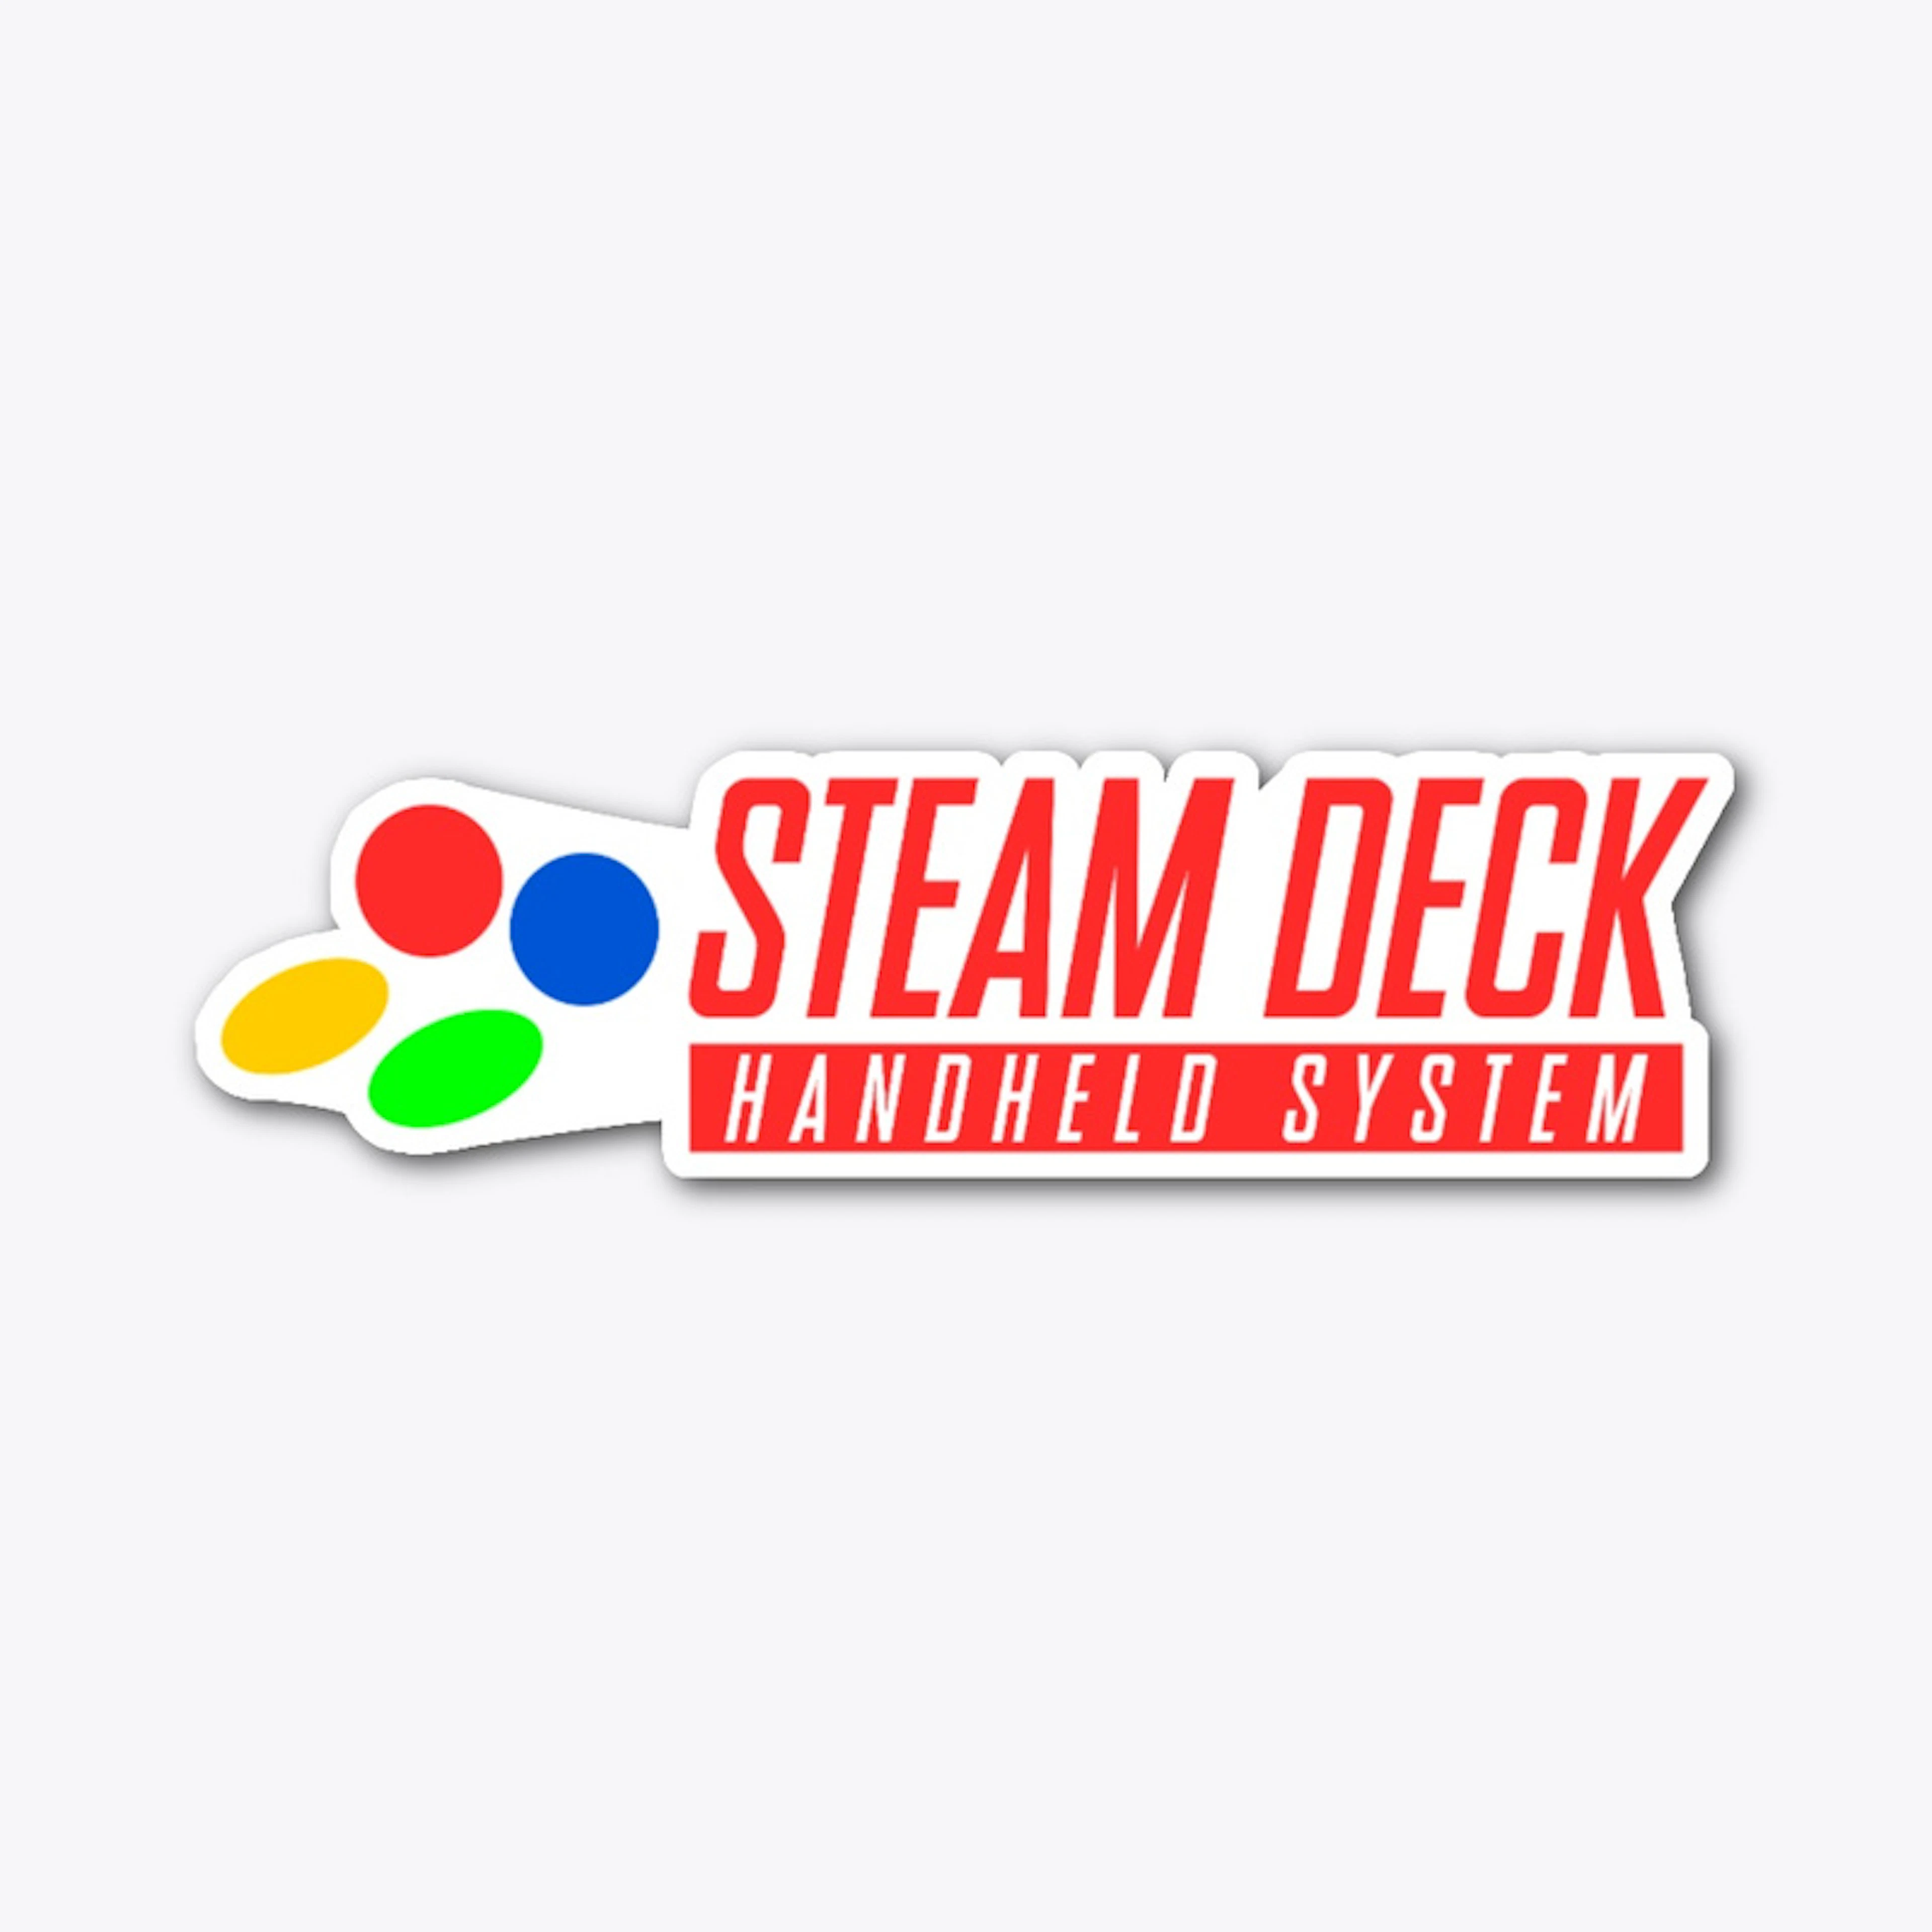 Steam Deck Handheld System